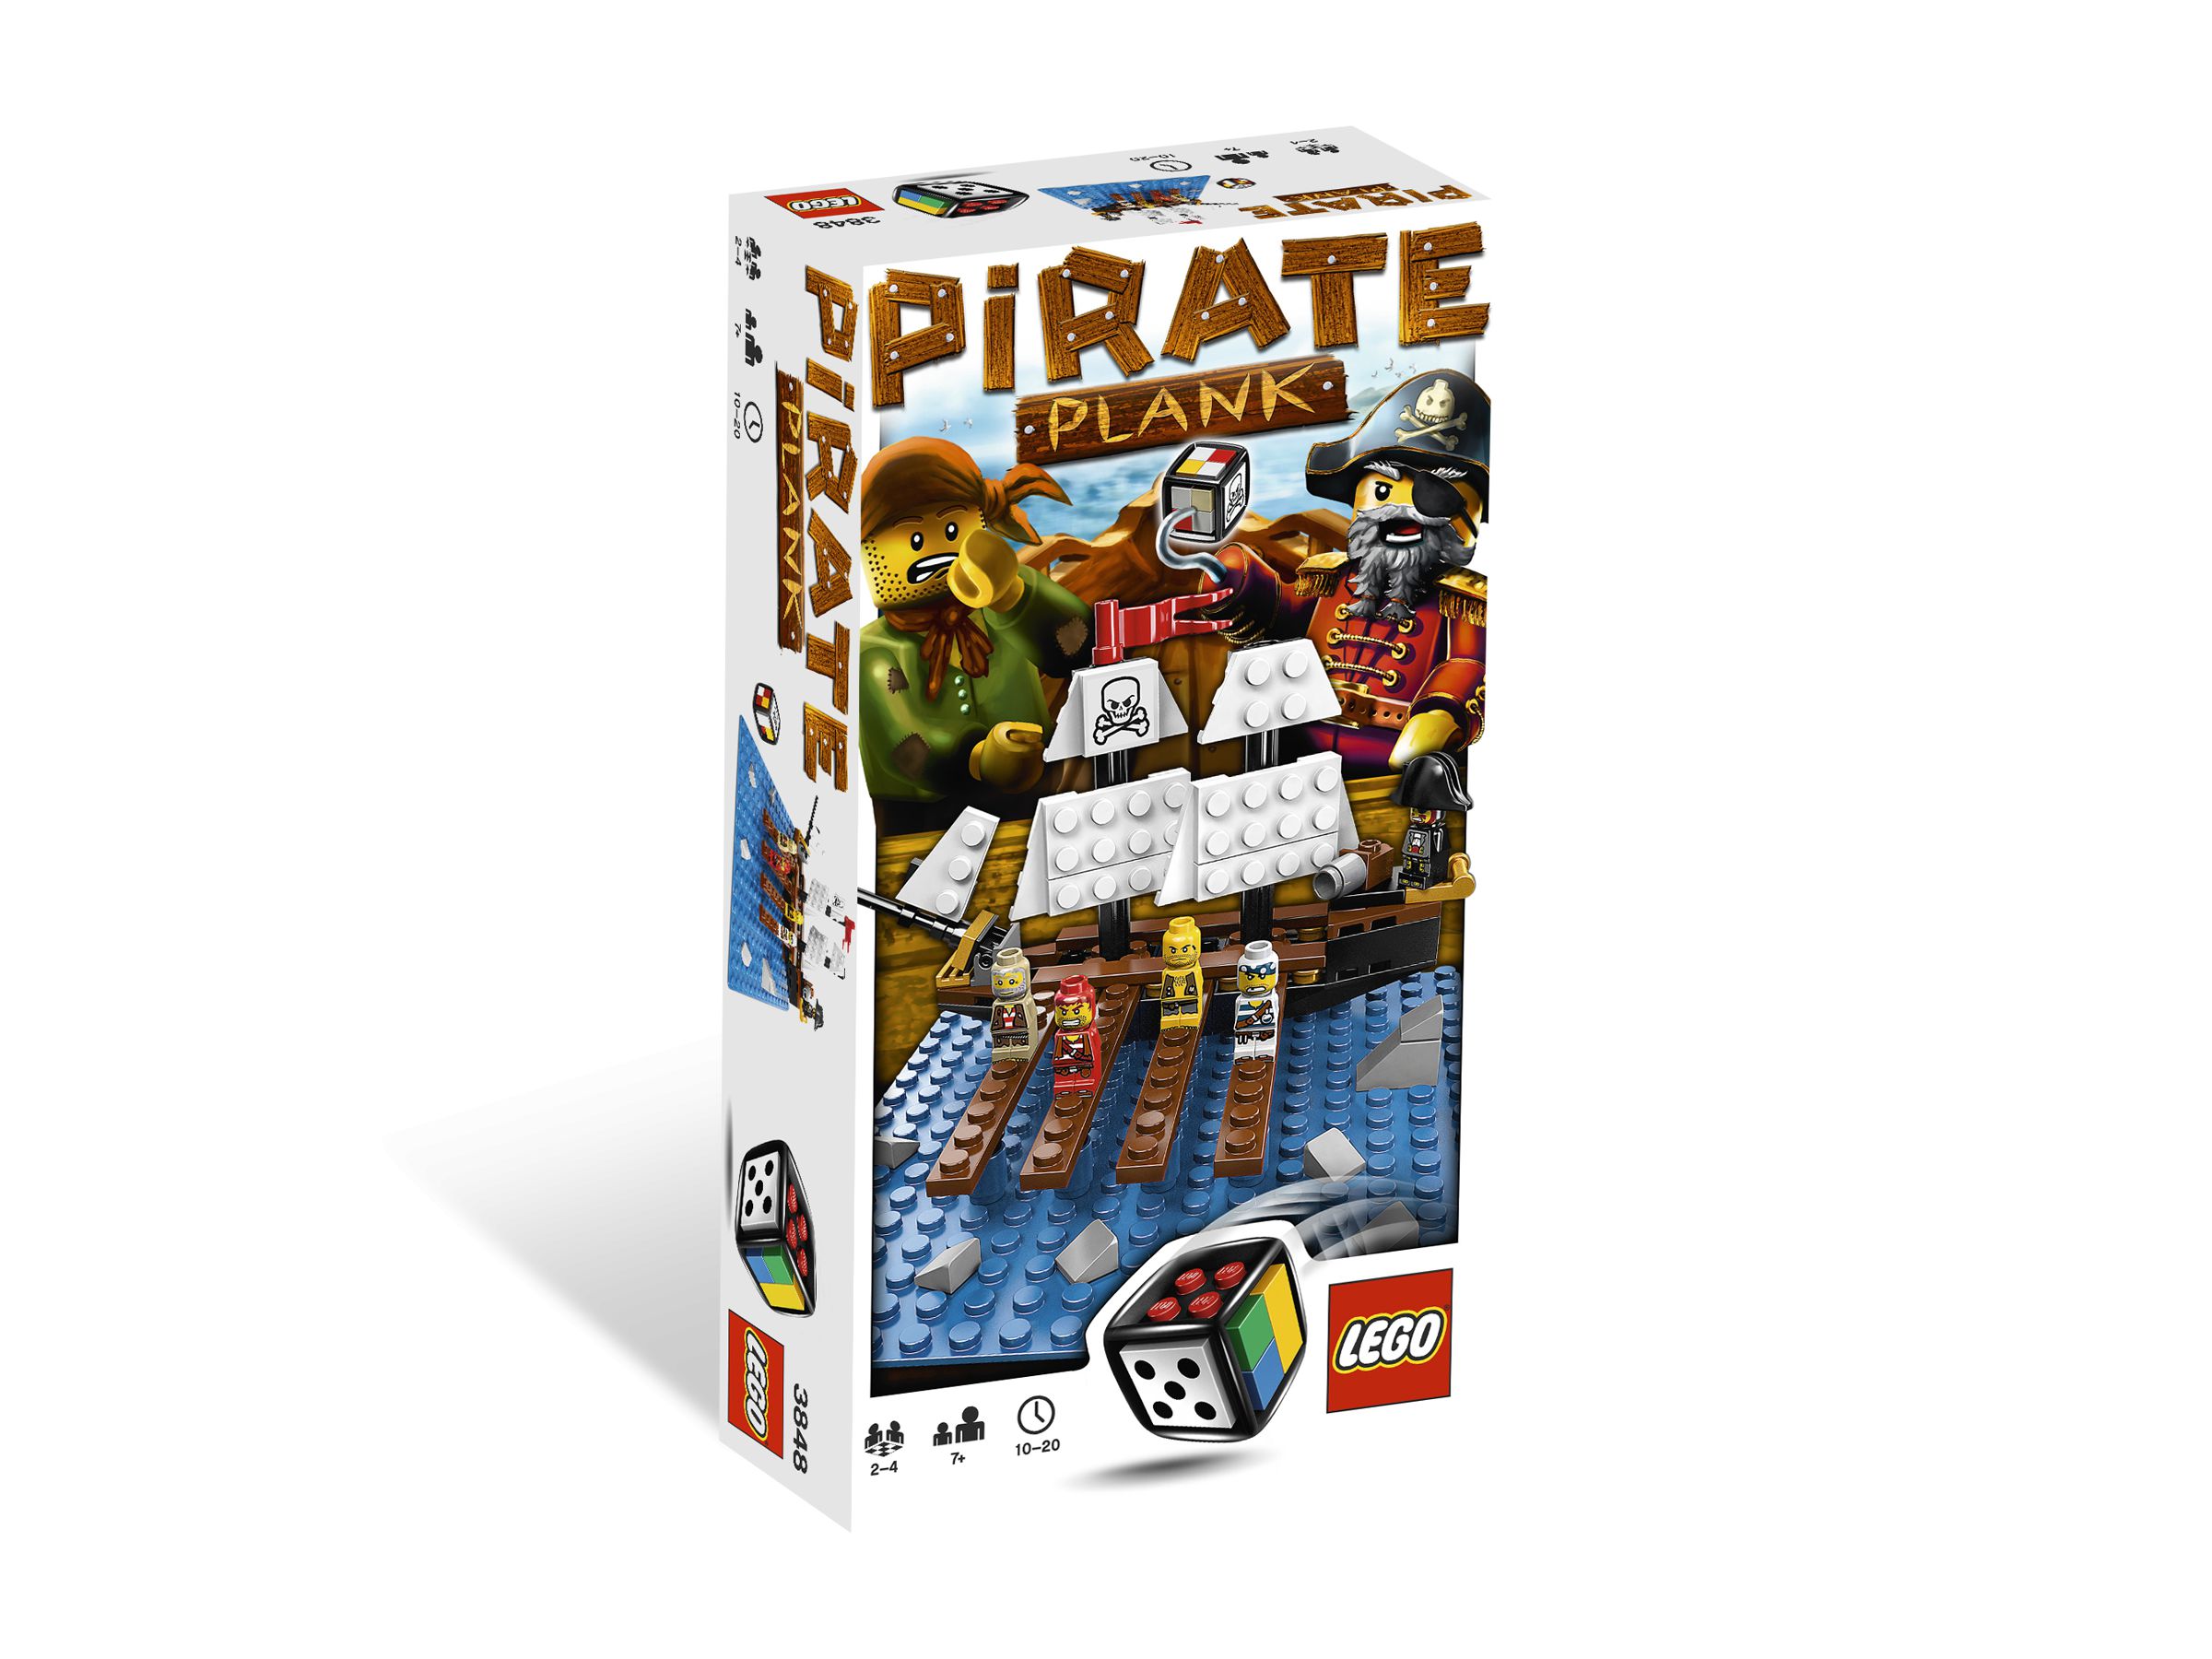 LEGO Games 3848 Pirate Plank LEGO_3848.jpg